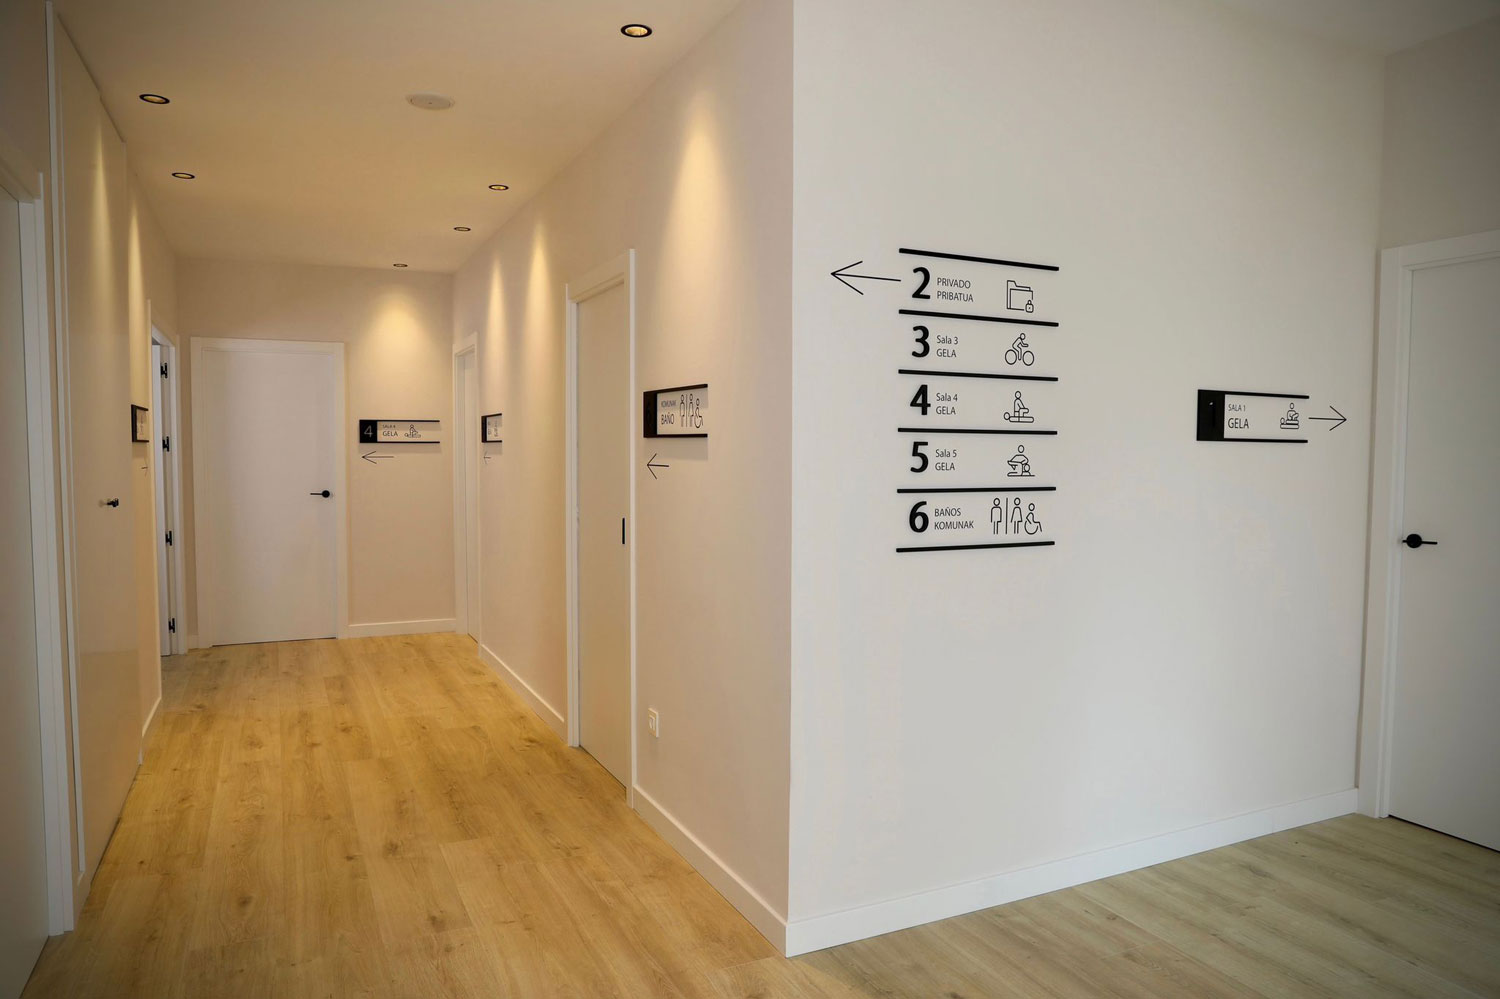 Vista interior distribución de fisioterapia Maimu, reforma integral realizada por Habitark Arquitectura y construccion